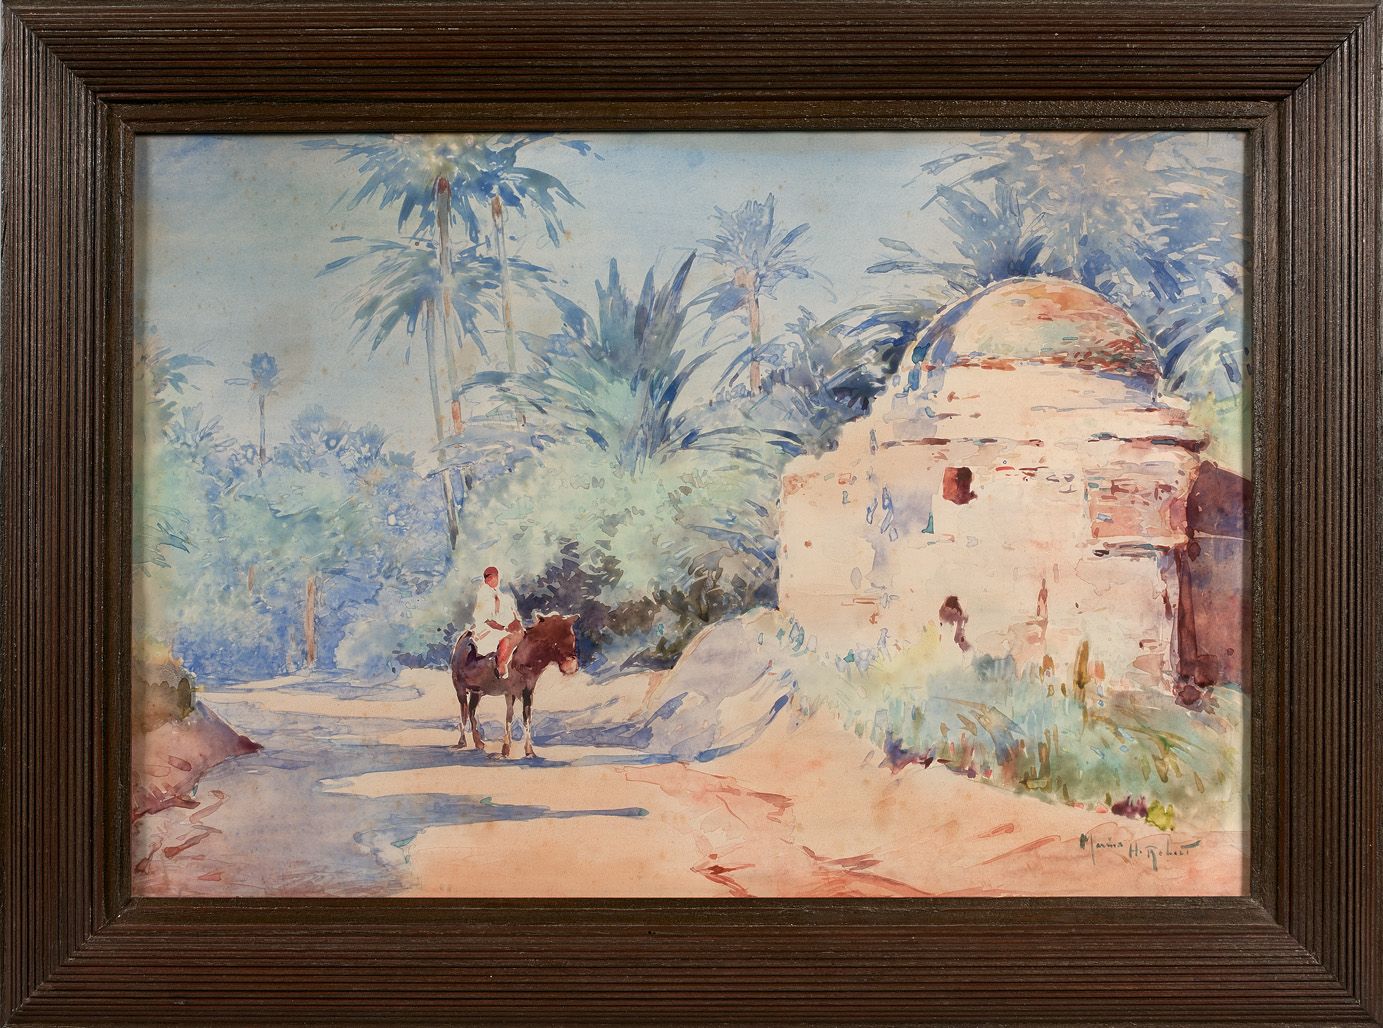 Null 马利厄斯-胡贝特-罗贝尔 (1885-1966)

棕榈树丛中的年轻骑手

水彩画，右下方有签名。

高36 - 宽53厘米